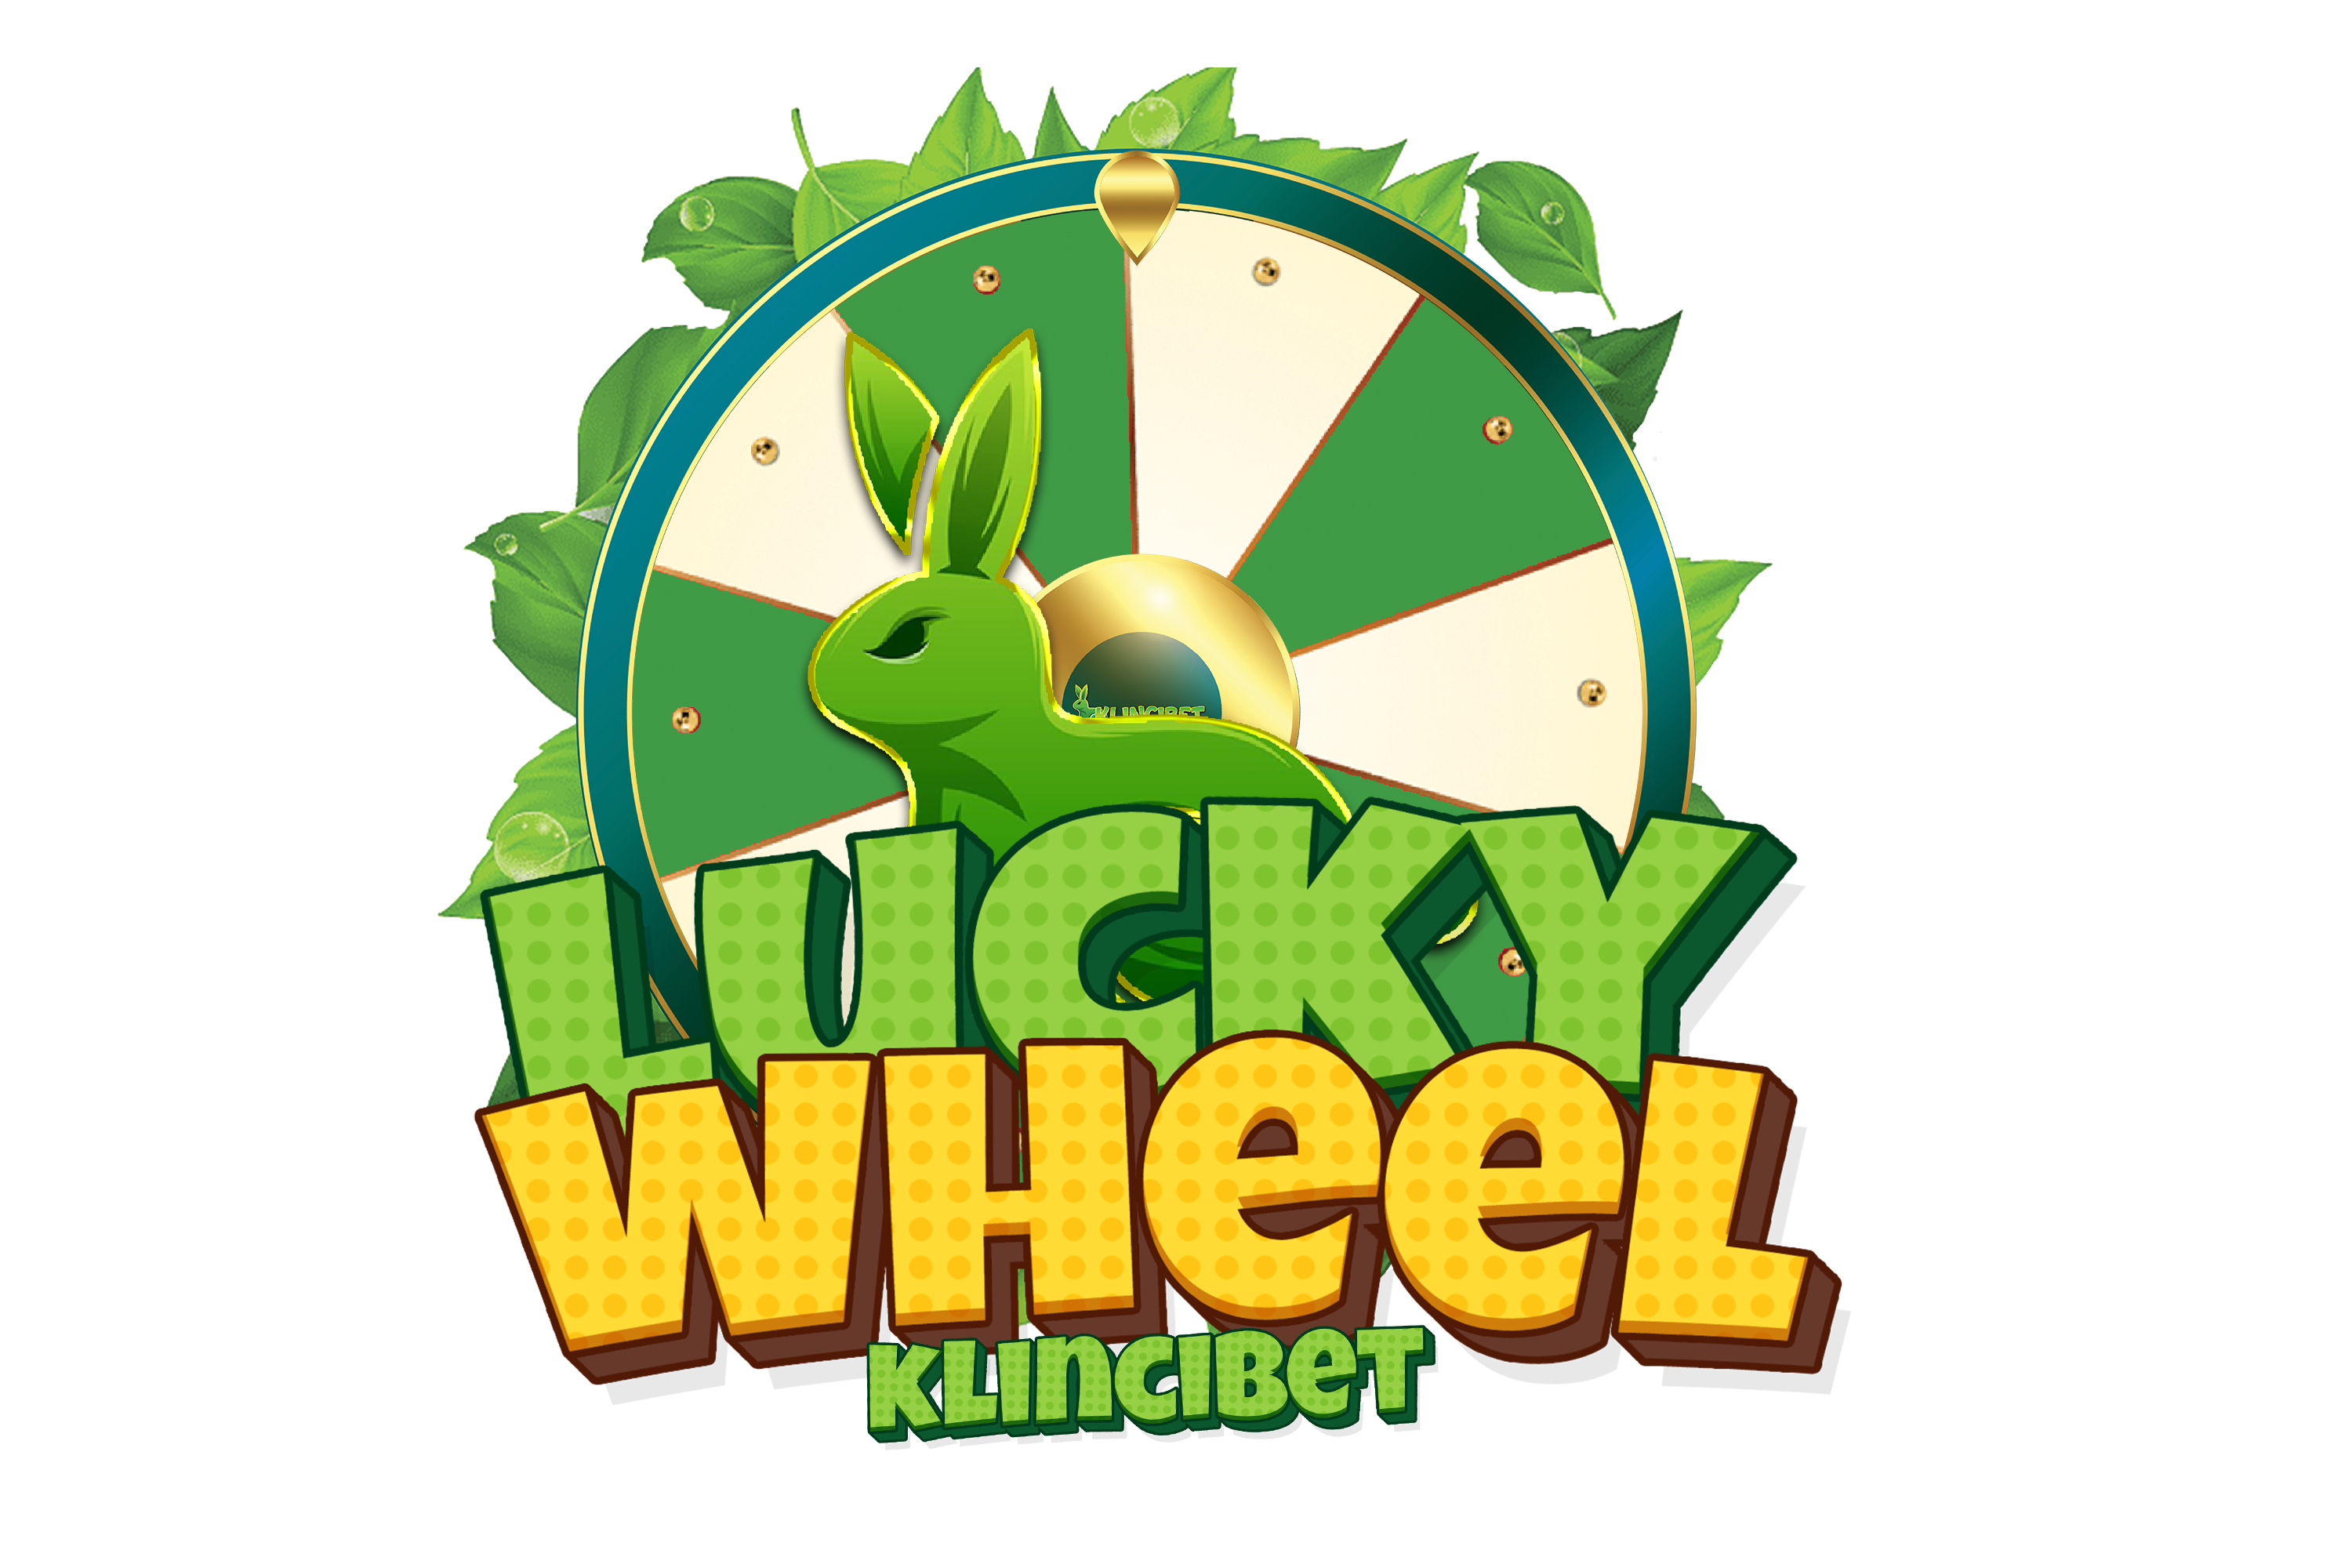 Voucher Wheel logo